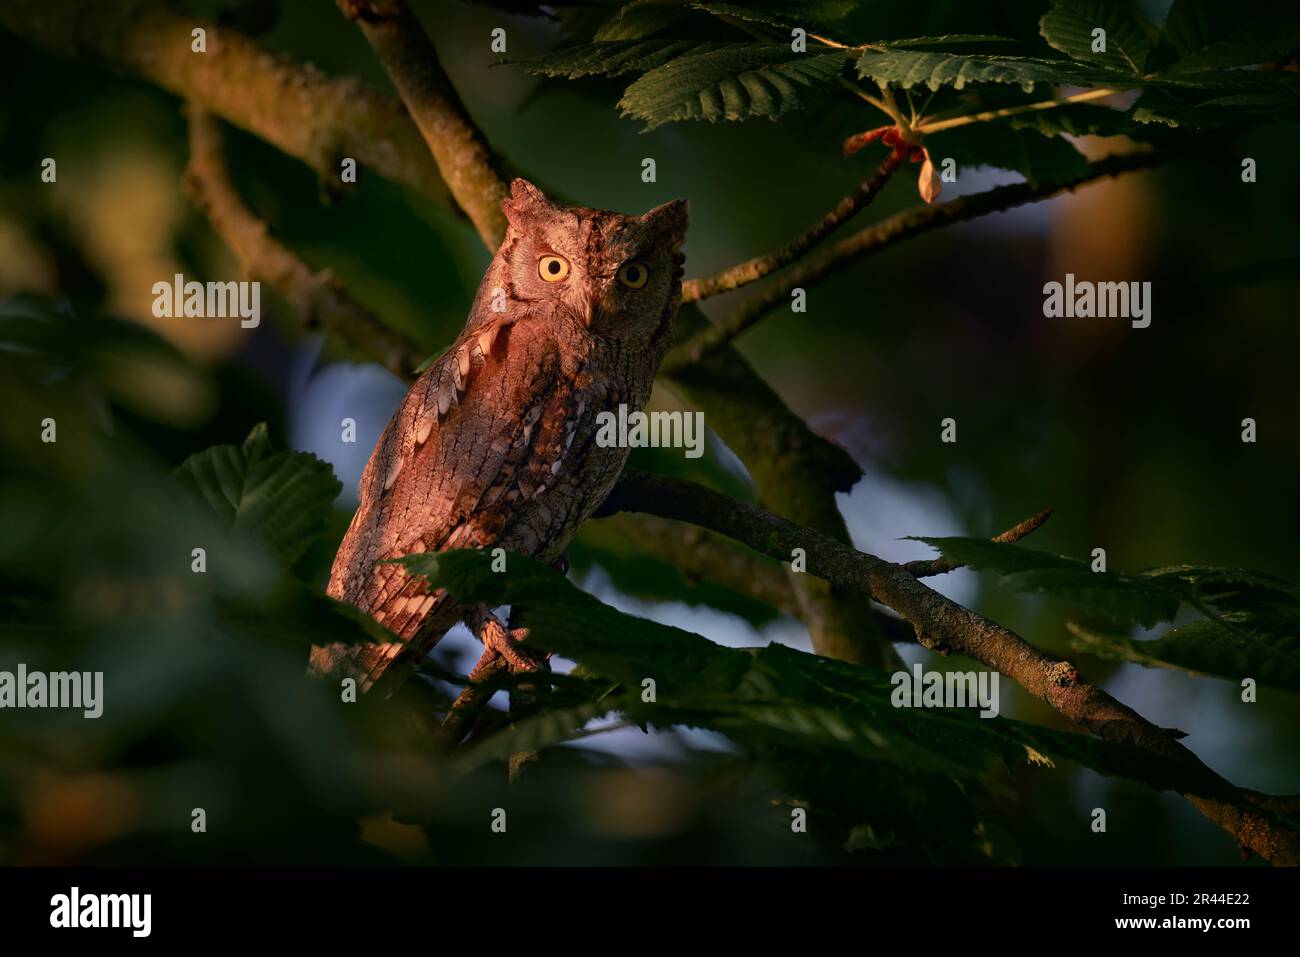 Scops Owl, Otus scops, piccolo gufo nell'habitat naturale, seduto sul ramo verde albero, foresta in background, Bulgaria. Scena faunistica da nat Foto Stock